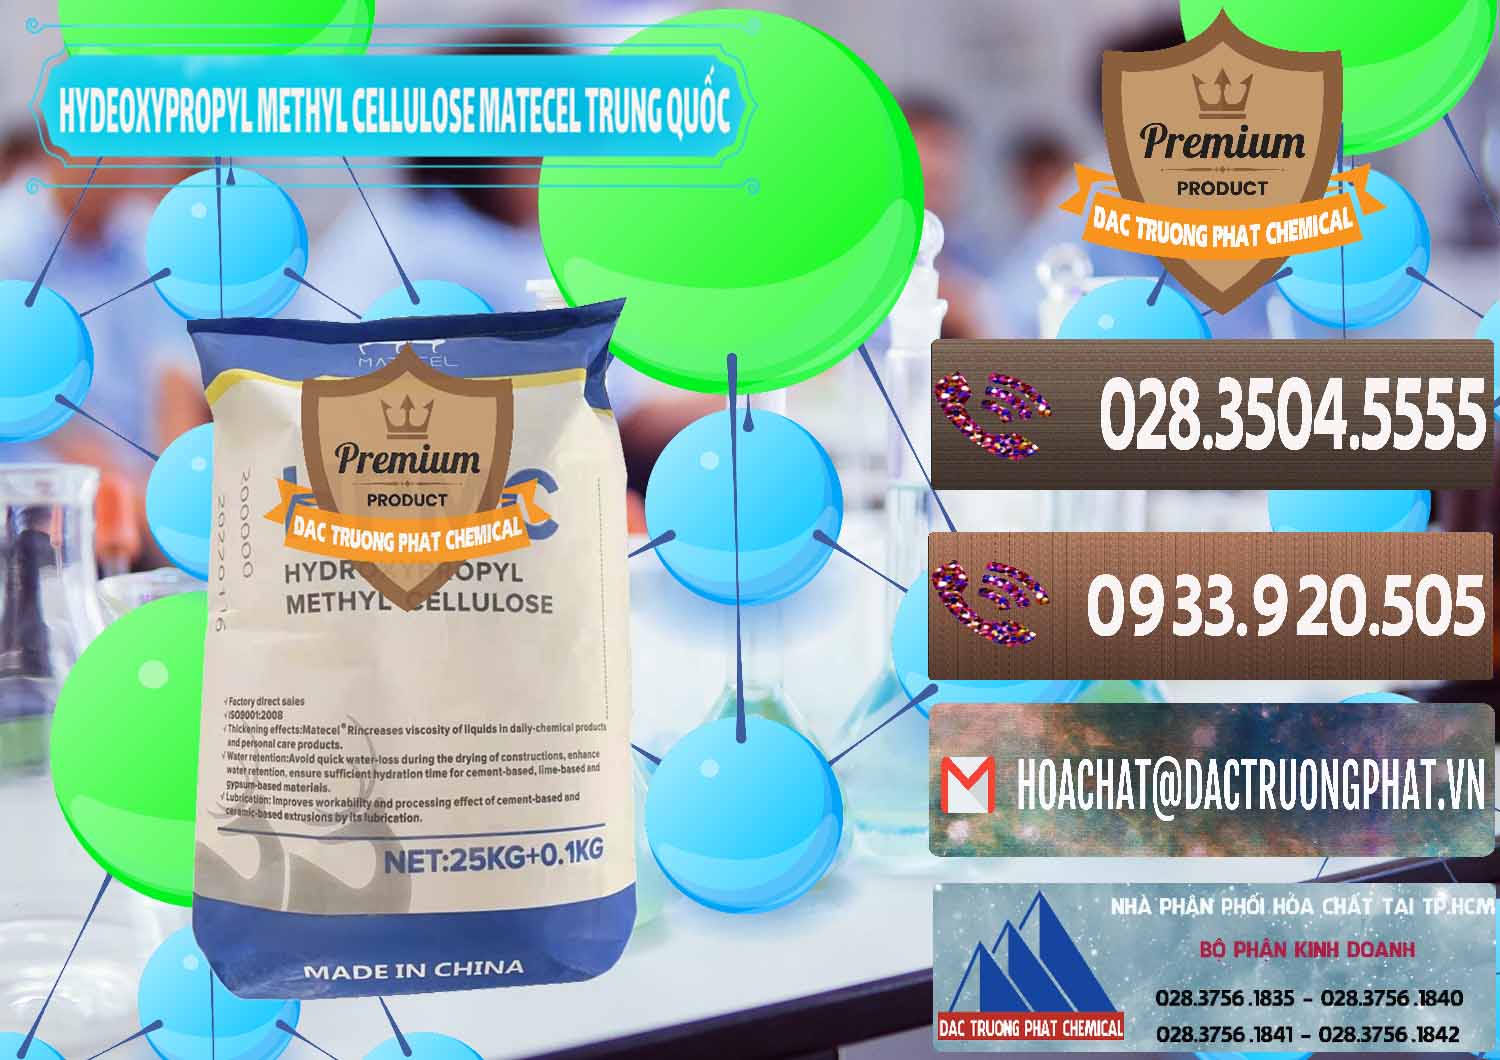 Cty chuyên bán & cung cấp Chất Tạo Đặc HPMC - Hydroxypropyl Methyl Cellulose Matecel Trung Quốc China - 0396 - Chuyên phân phối _ kinh doanh hóa chất tại TP.HCM - hoachatviet.net